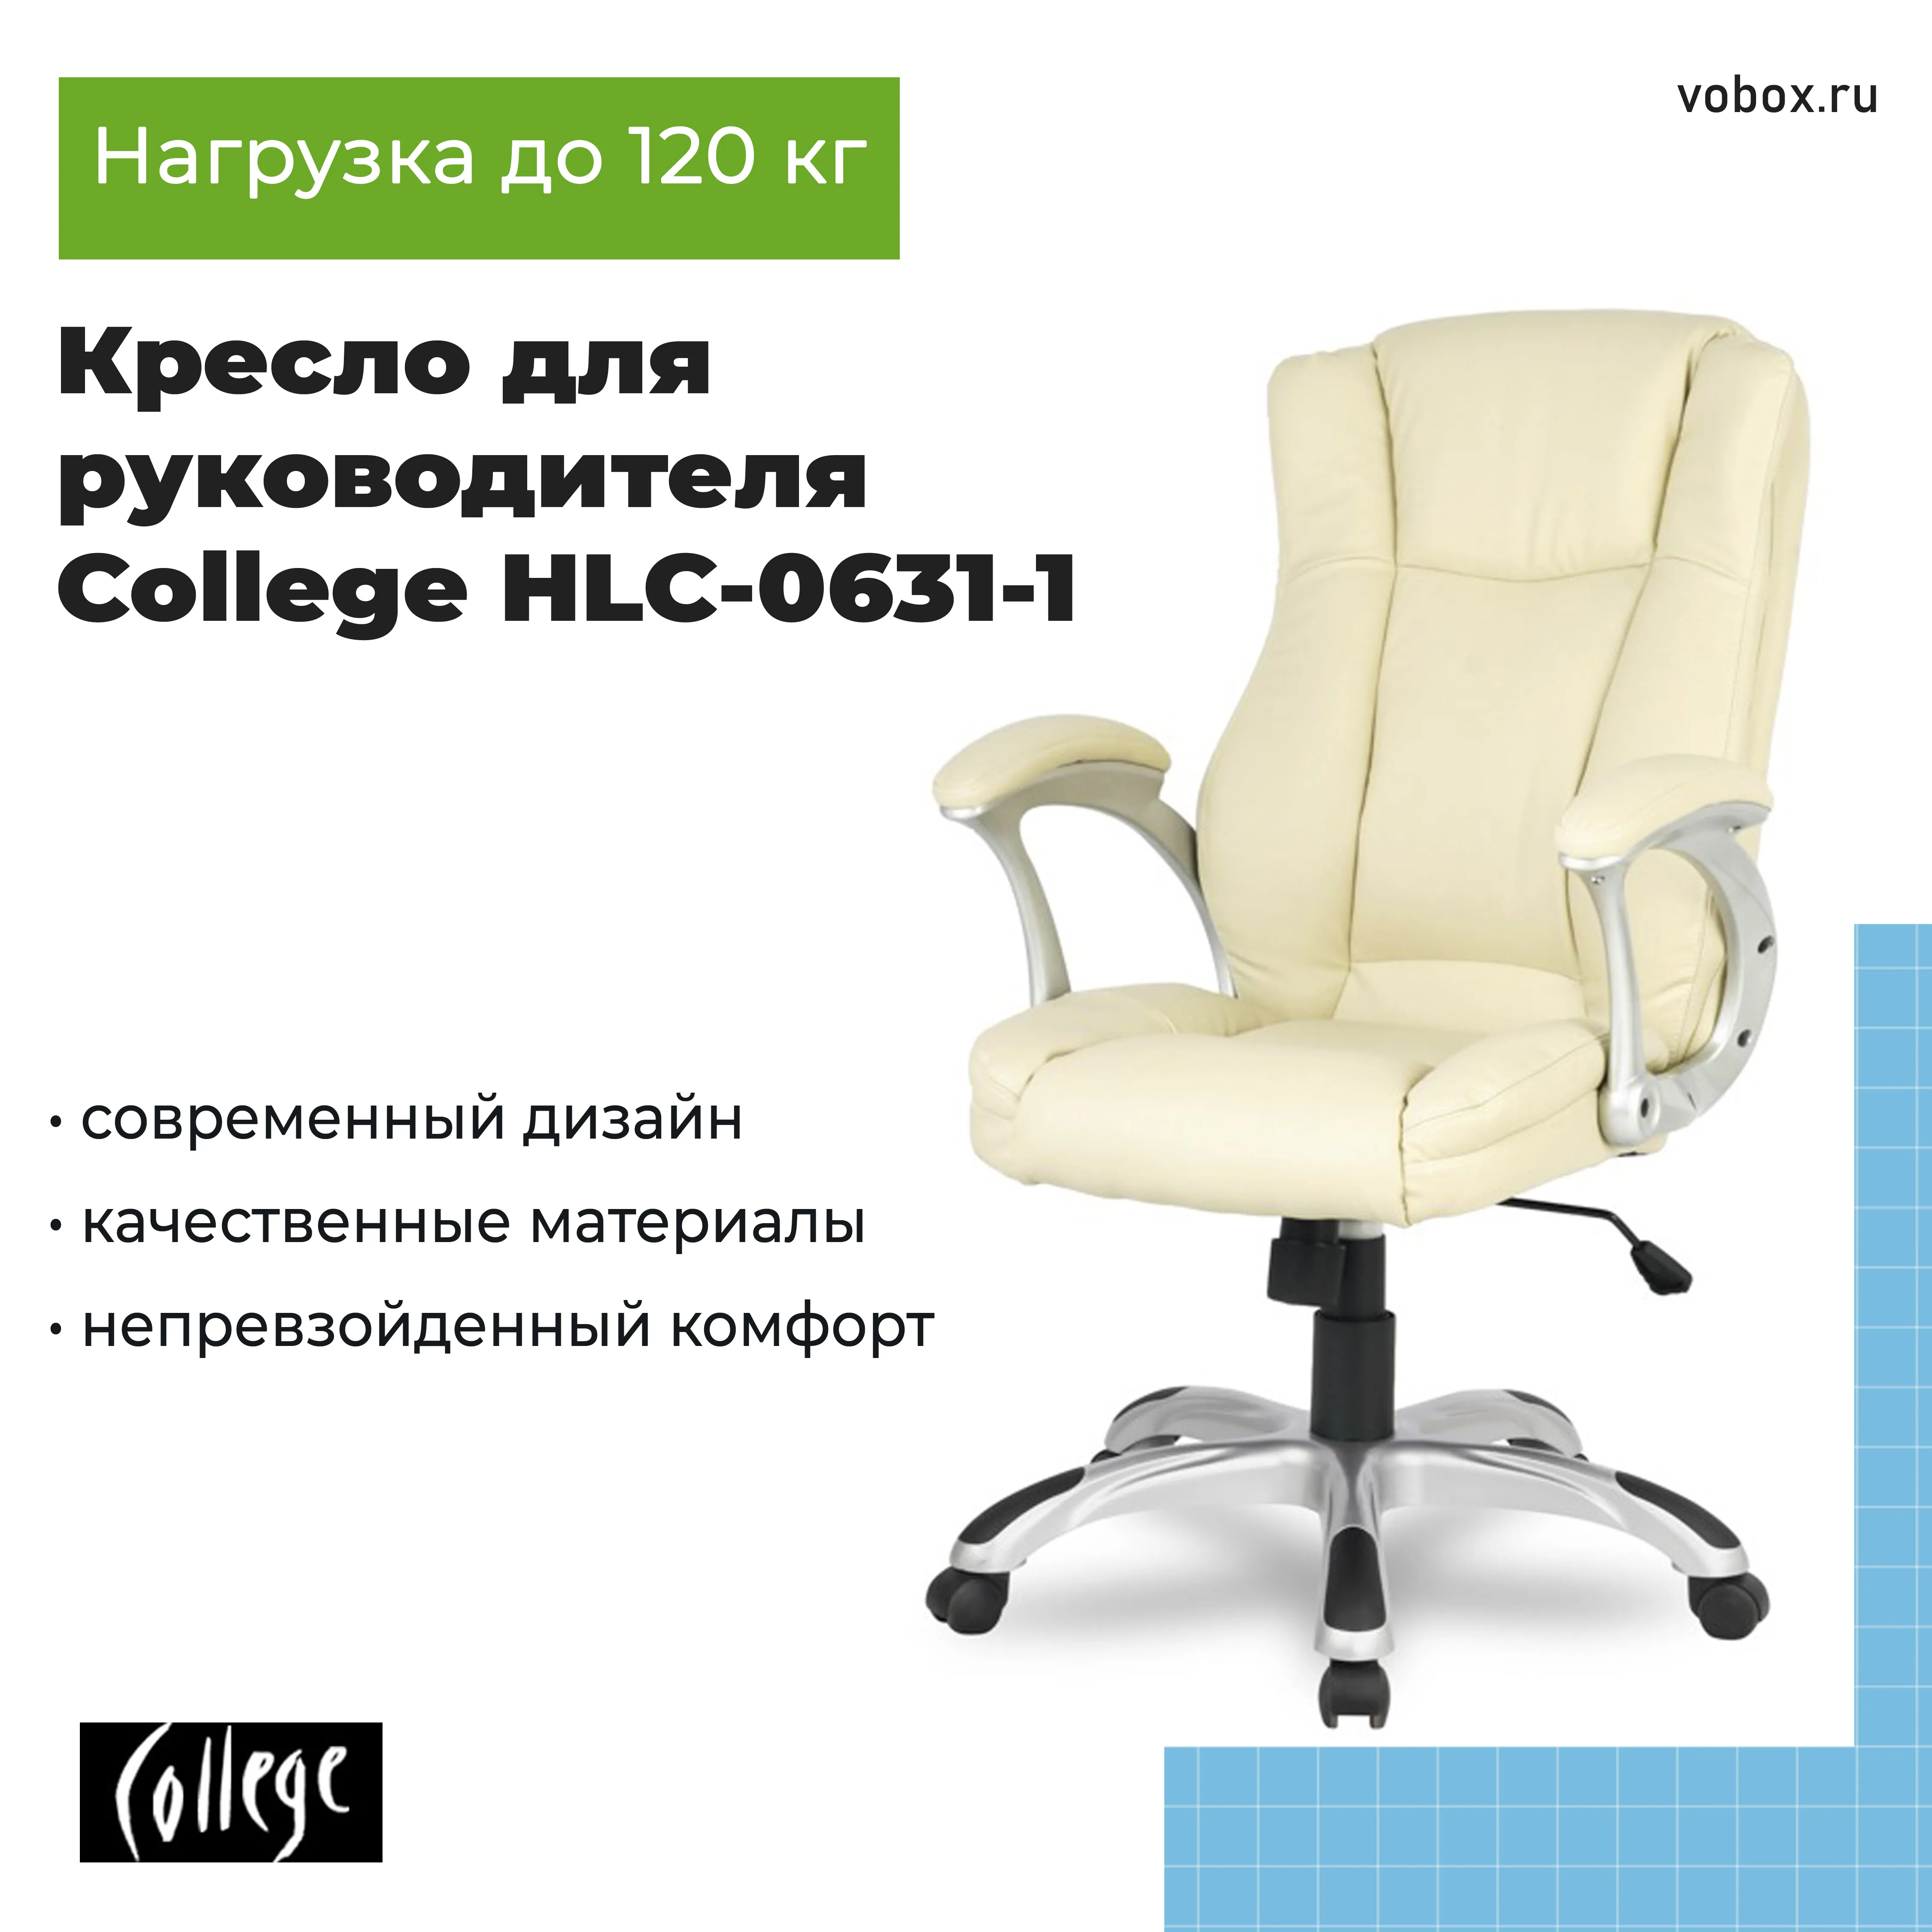 Кресло для руководителя College HLC-0631-1 Бежевый